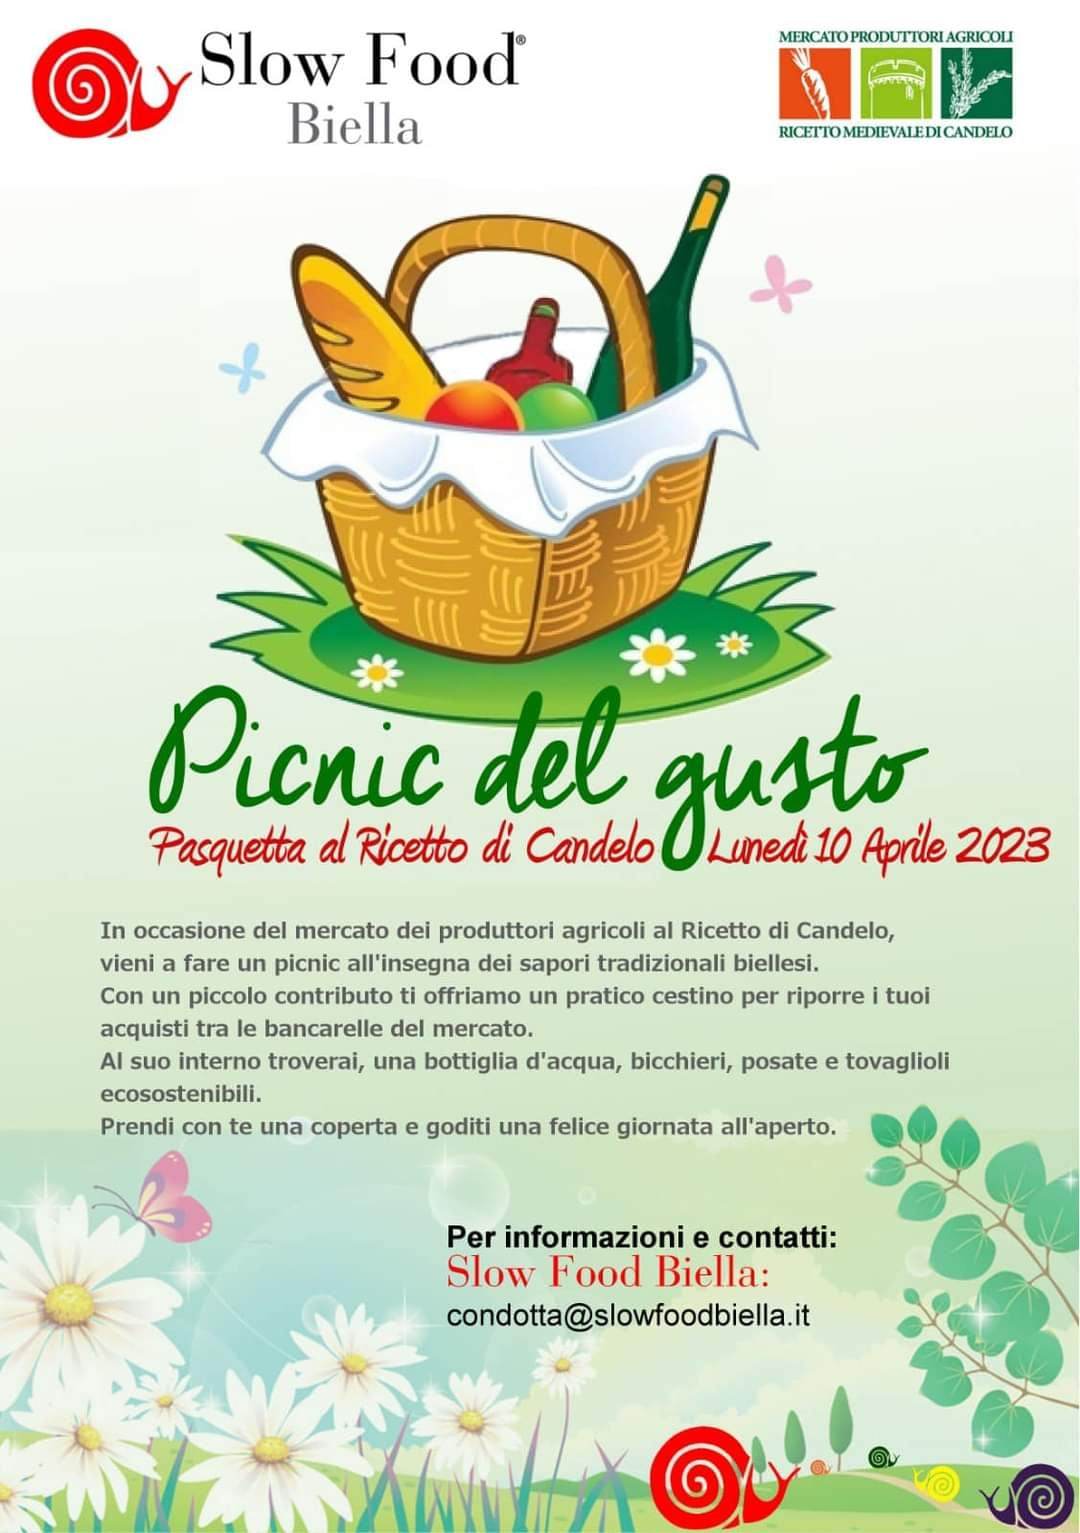 10 aprile 2023 dalle 10 alle 18 al Ricetto di Candelo pic-nik di Pasquetta